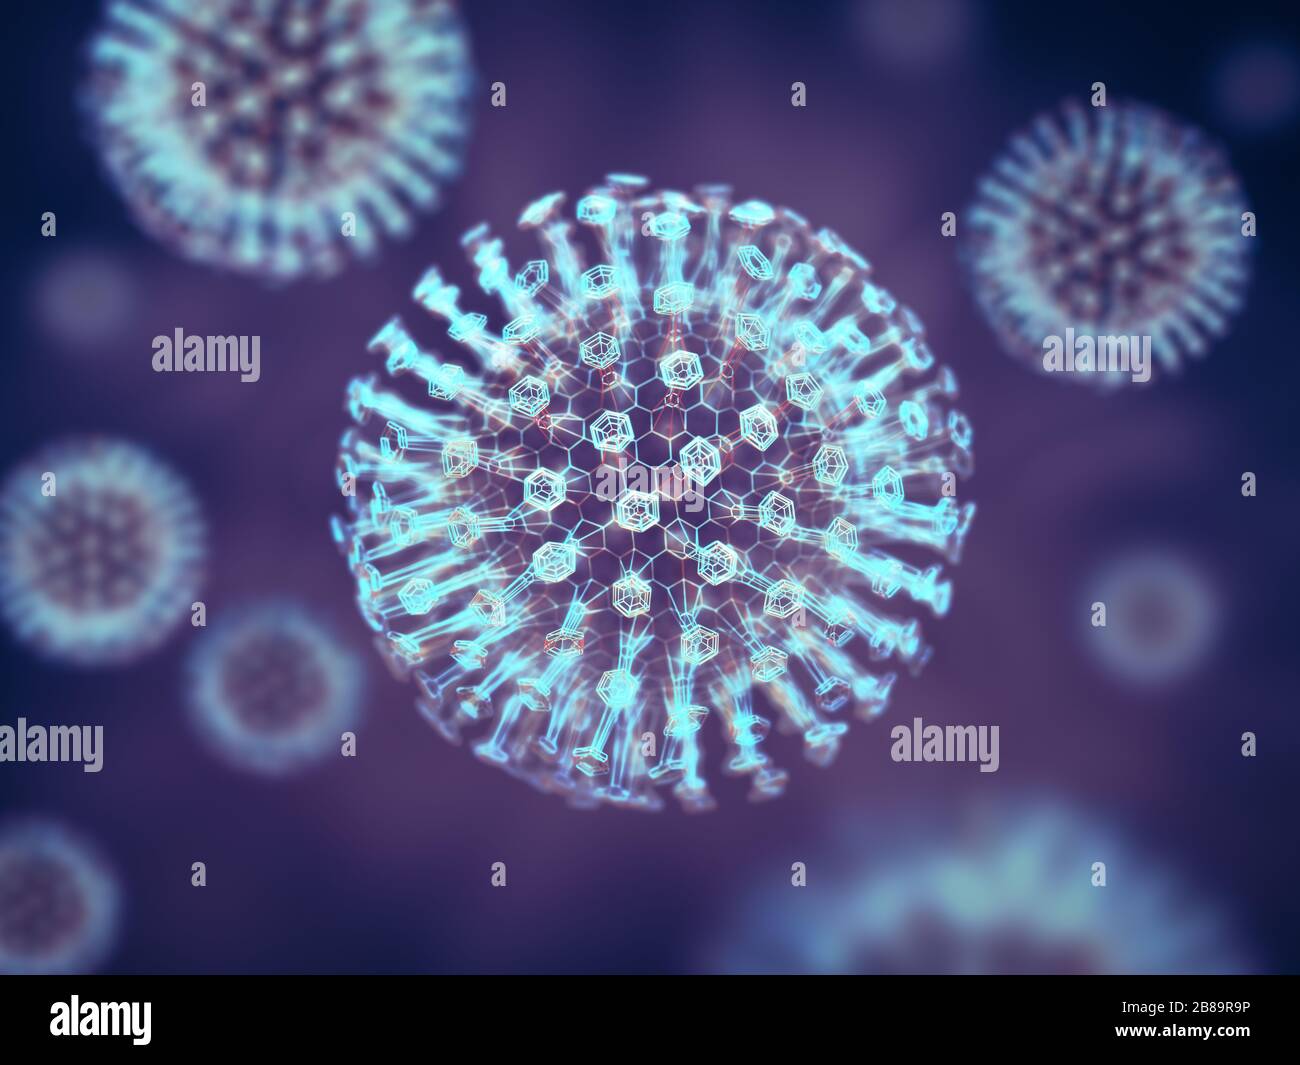 Virus, illustration Stock Photo